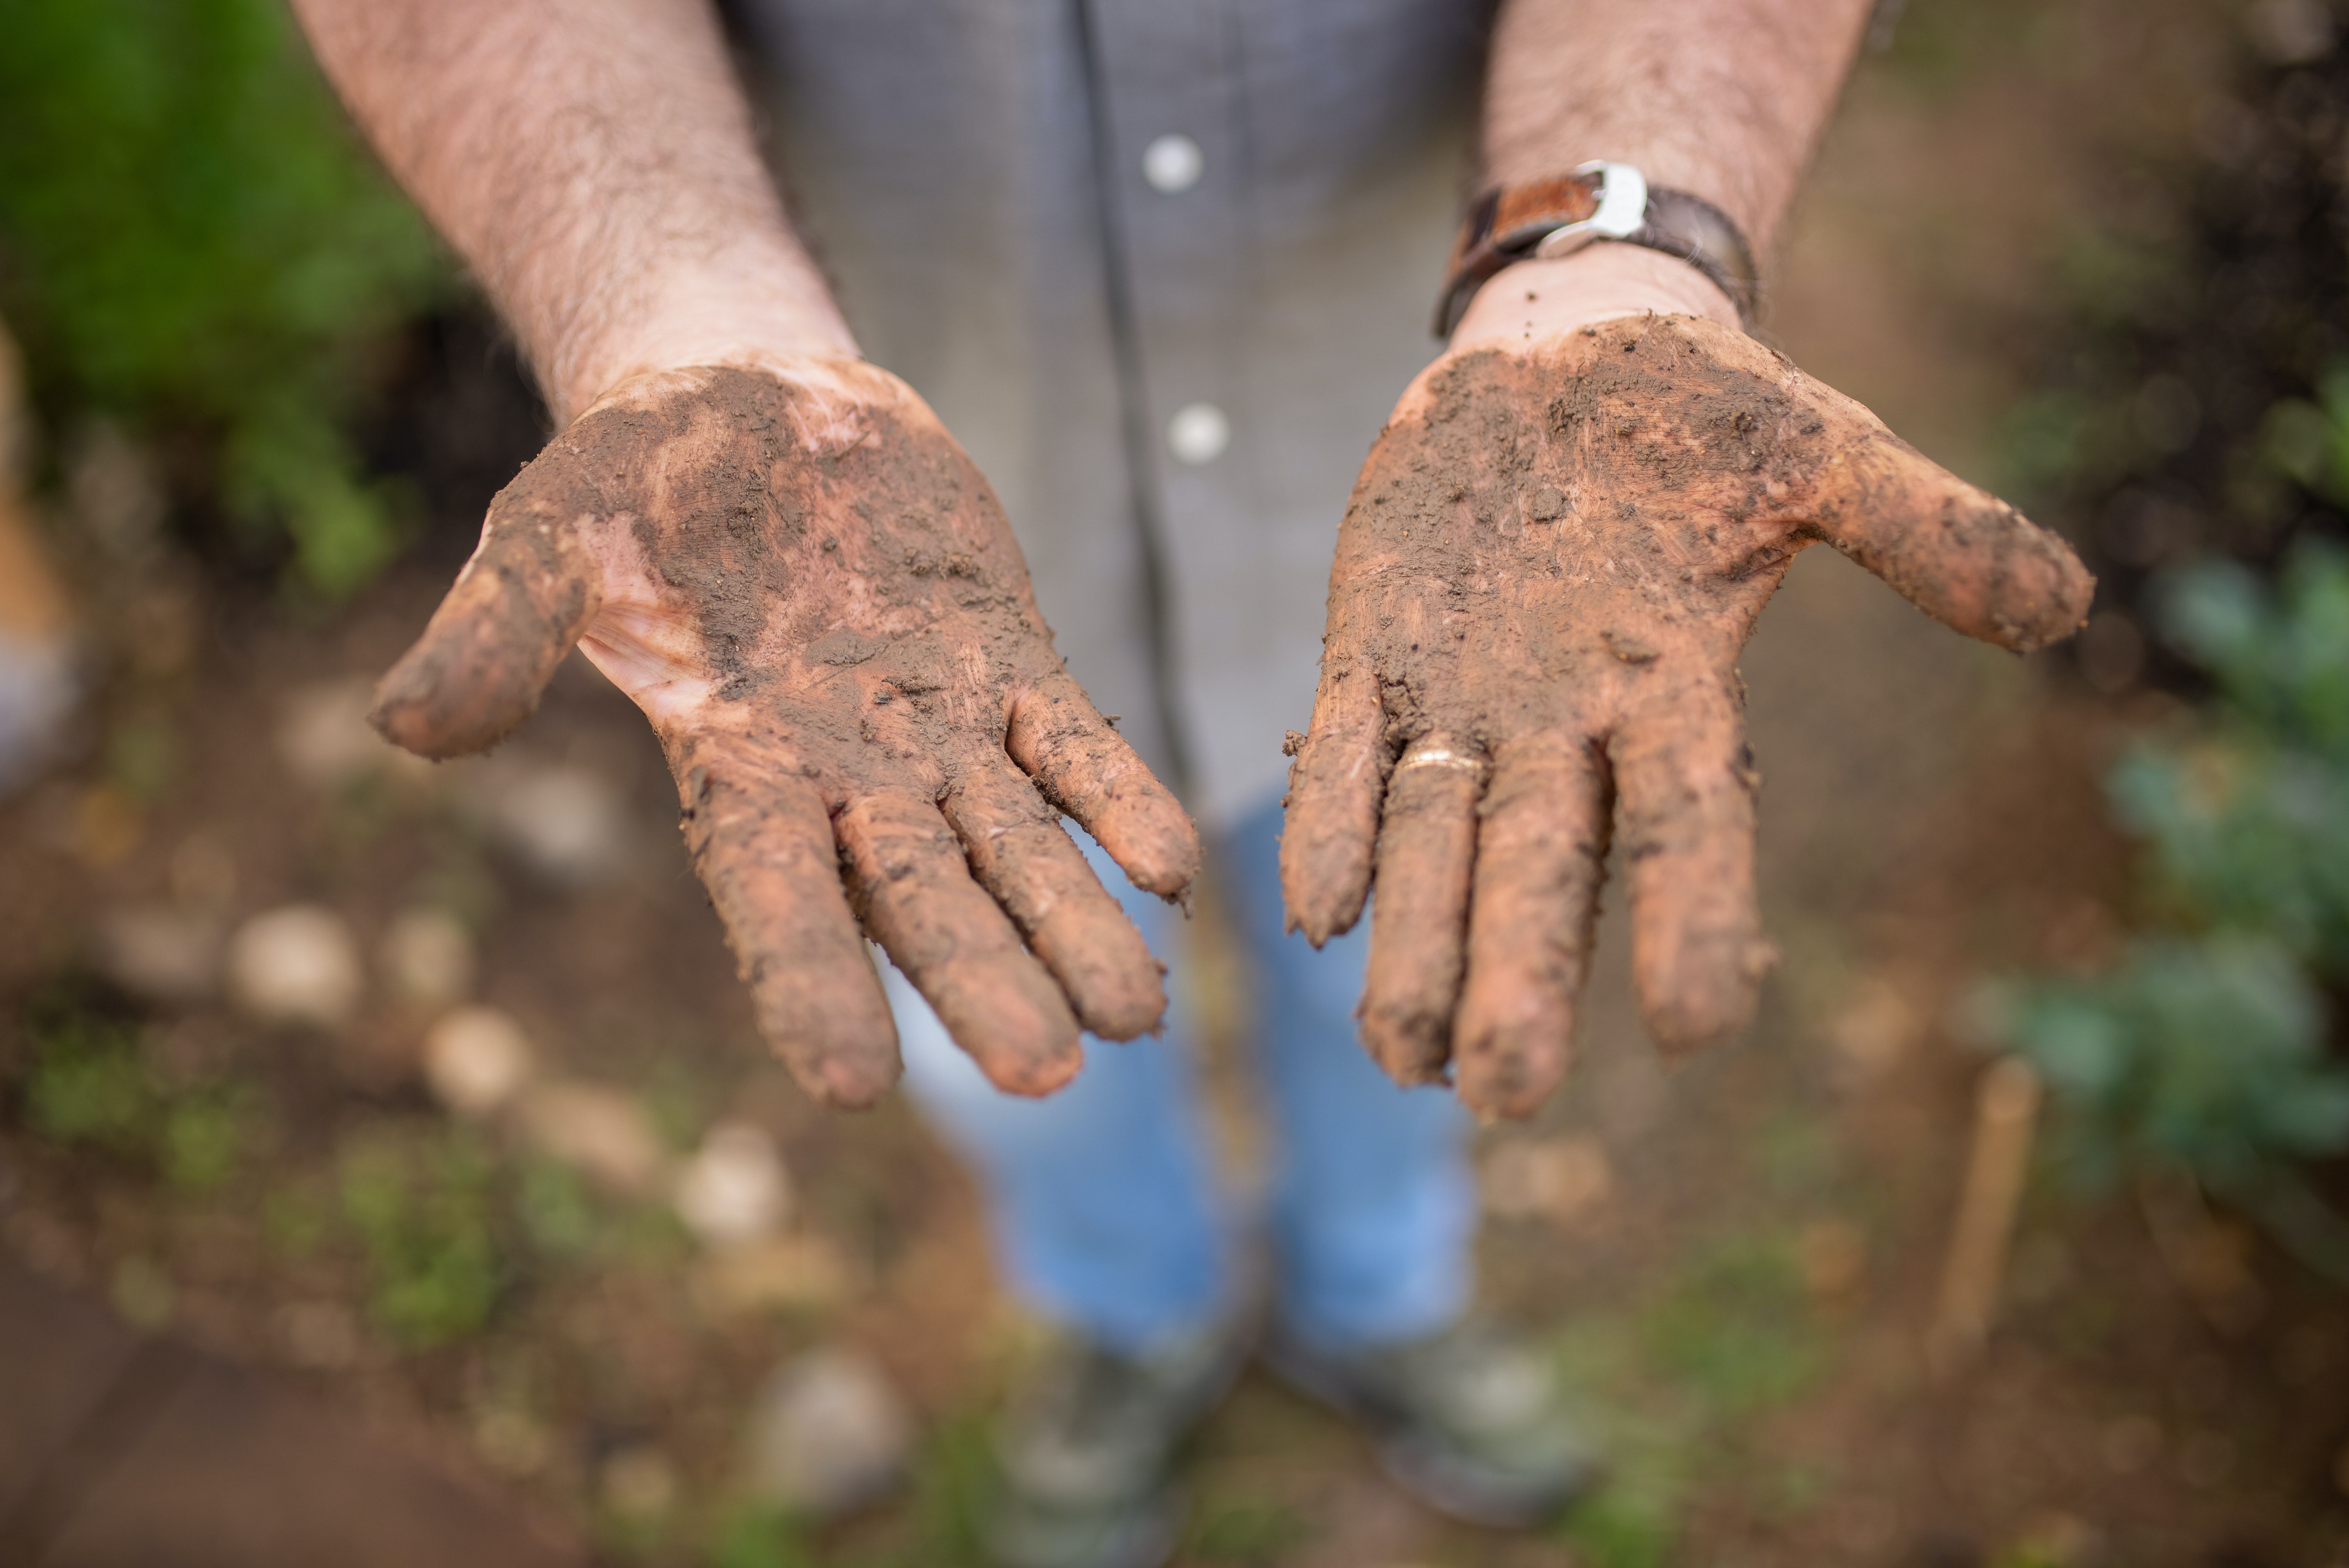 Soil on hands